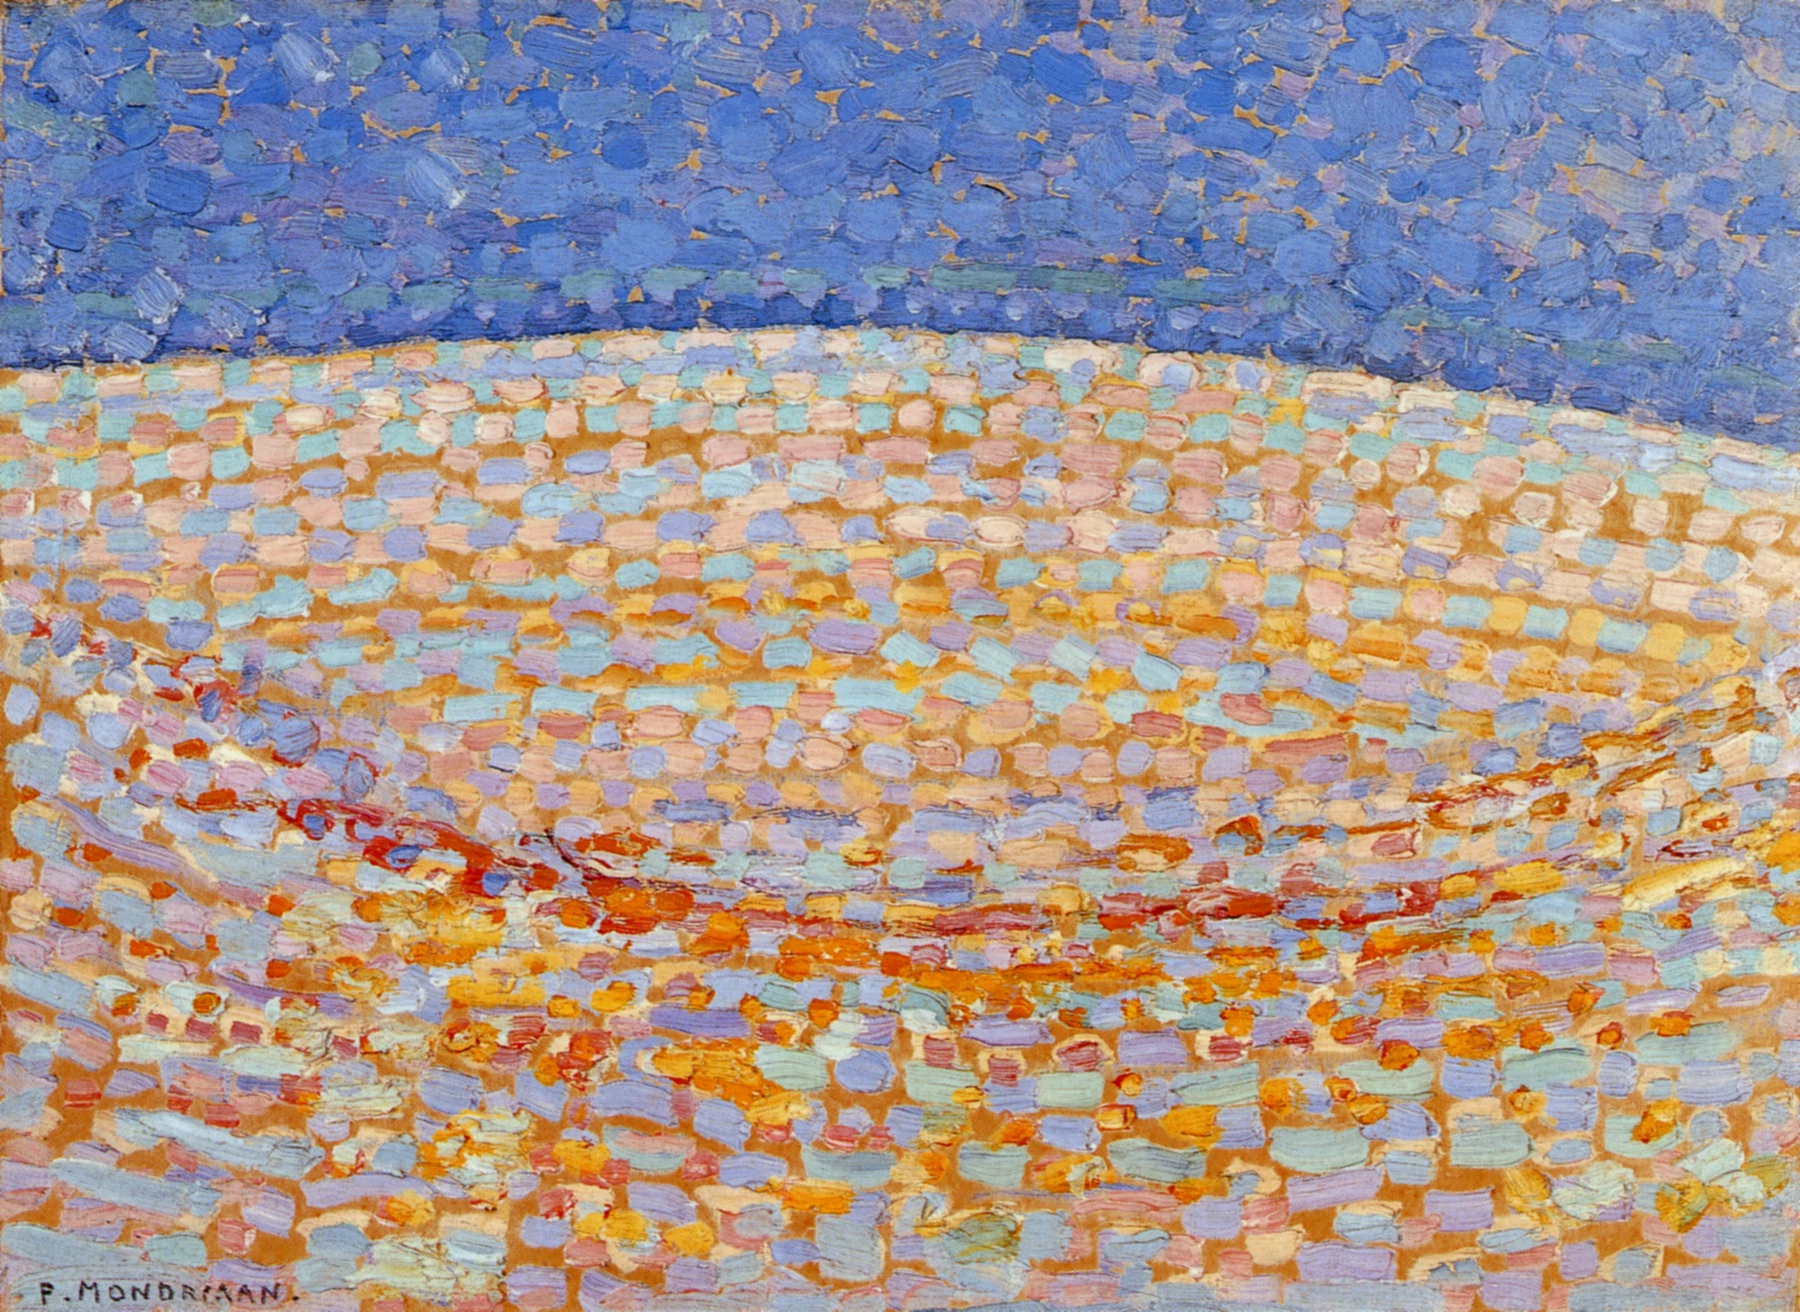 Dune 3, Piet Mondrian